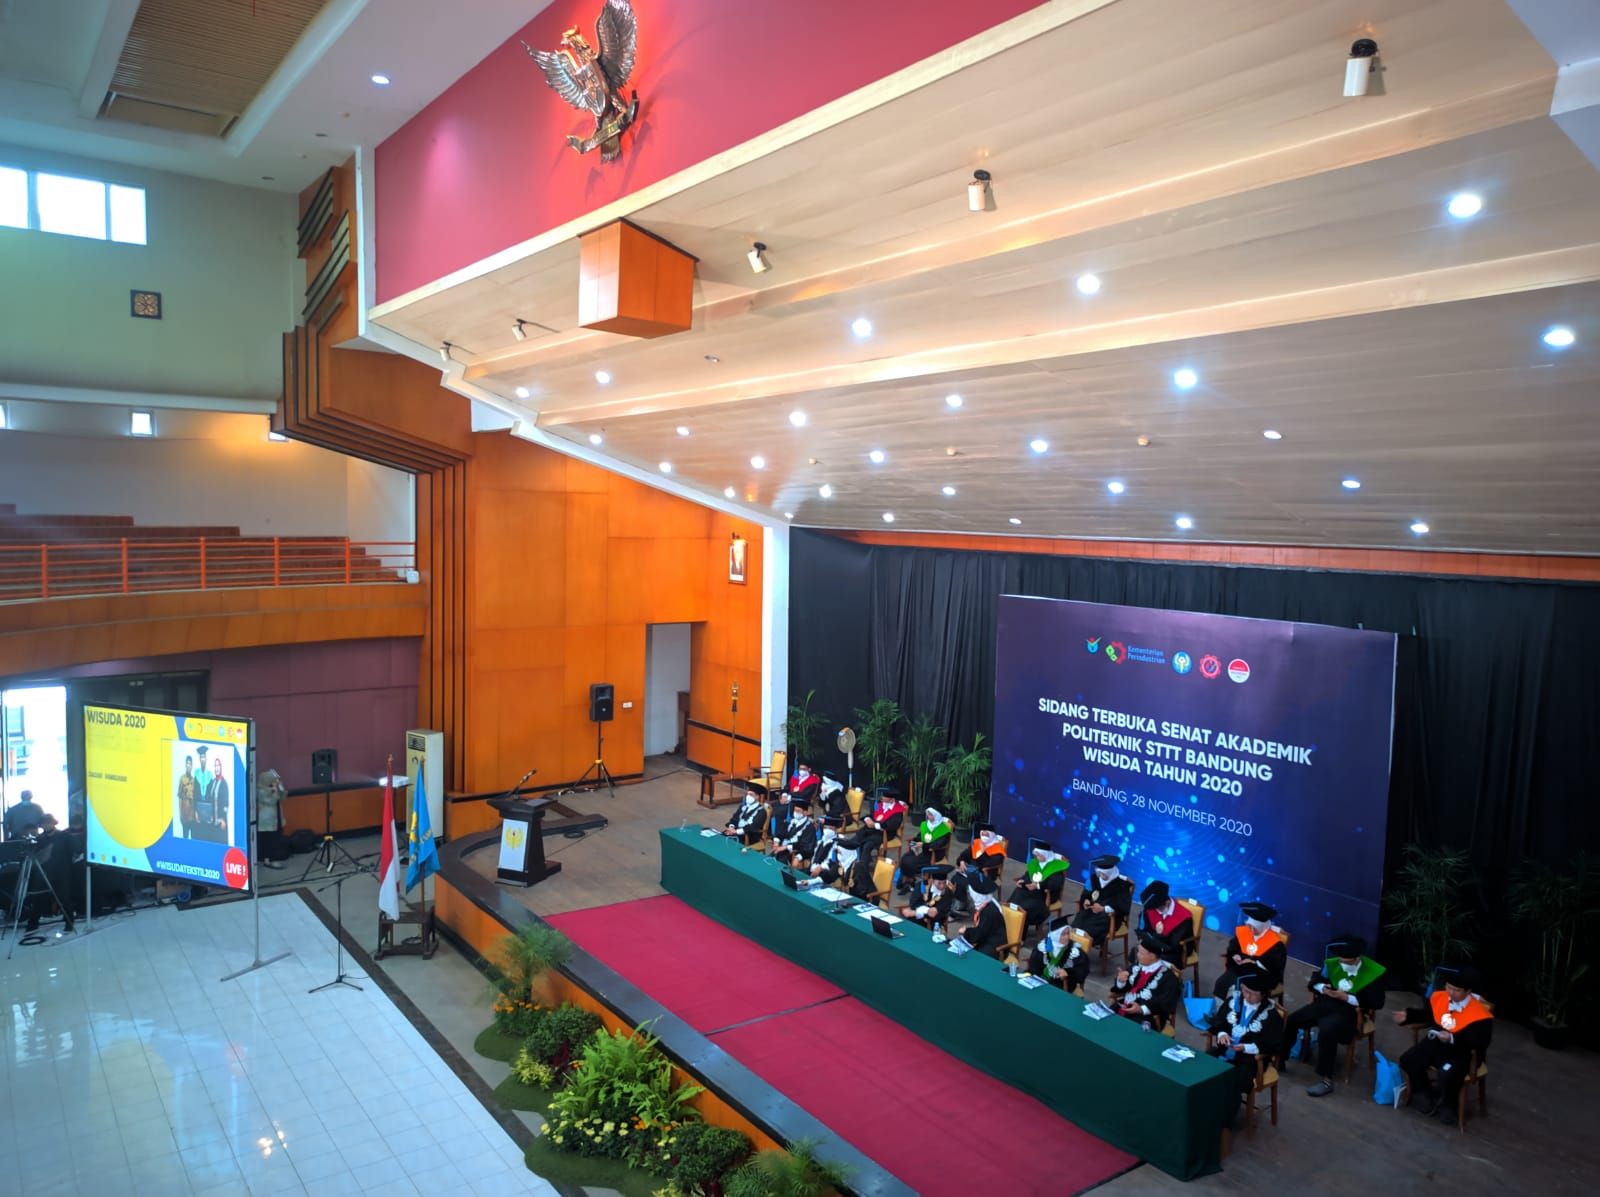 Suasana wisuda  Politeknik STTT Bandung, Sabtu 28 November 2020